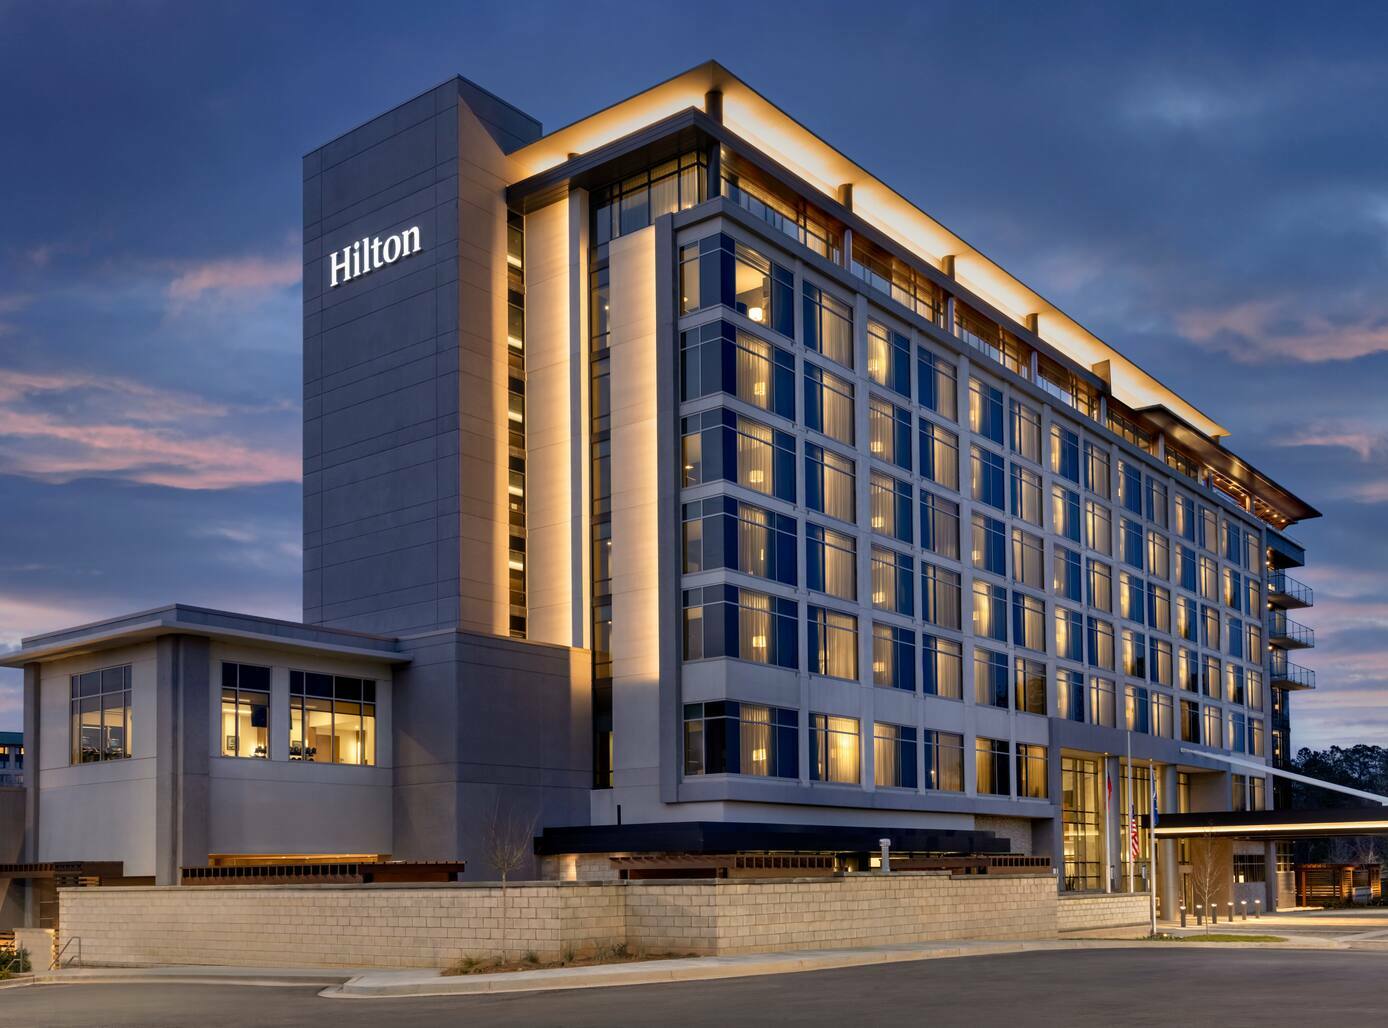 Photo of Hilton Alpharetta Atlanta, Alpharetta, GA